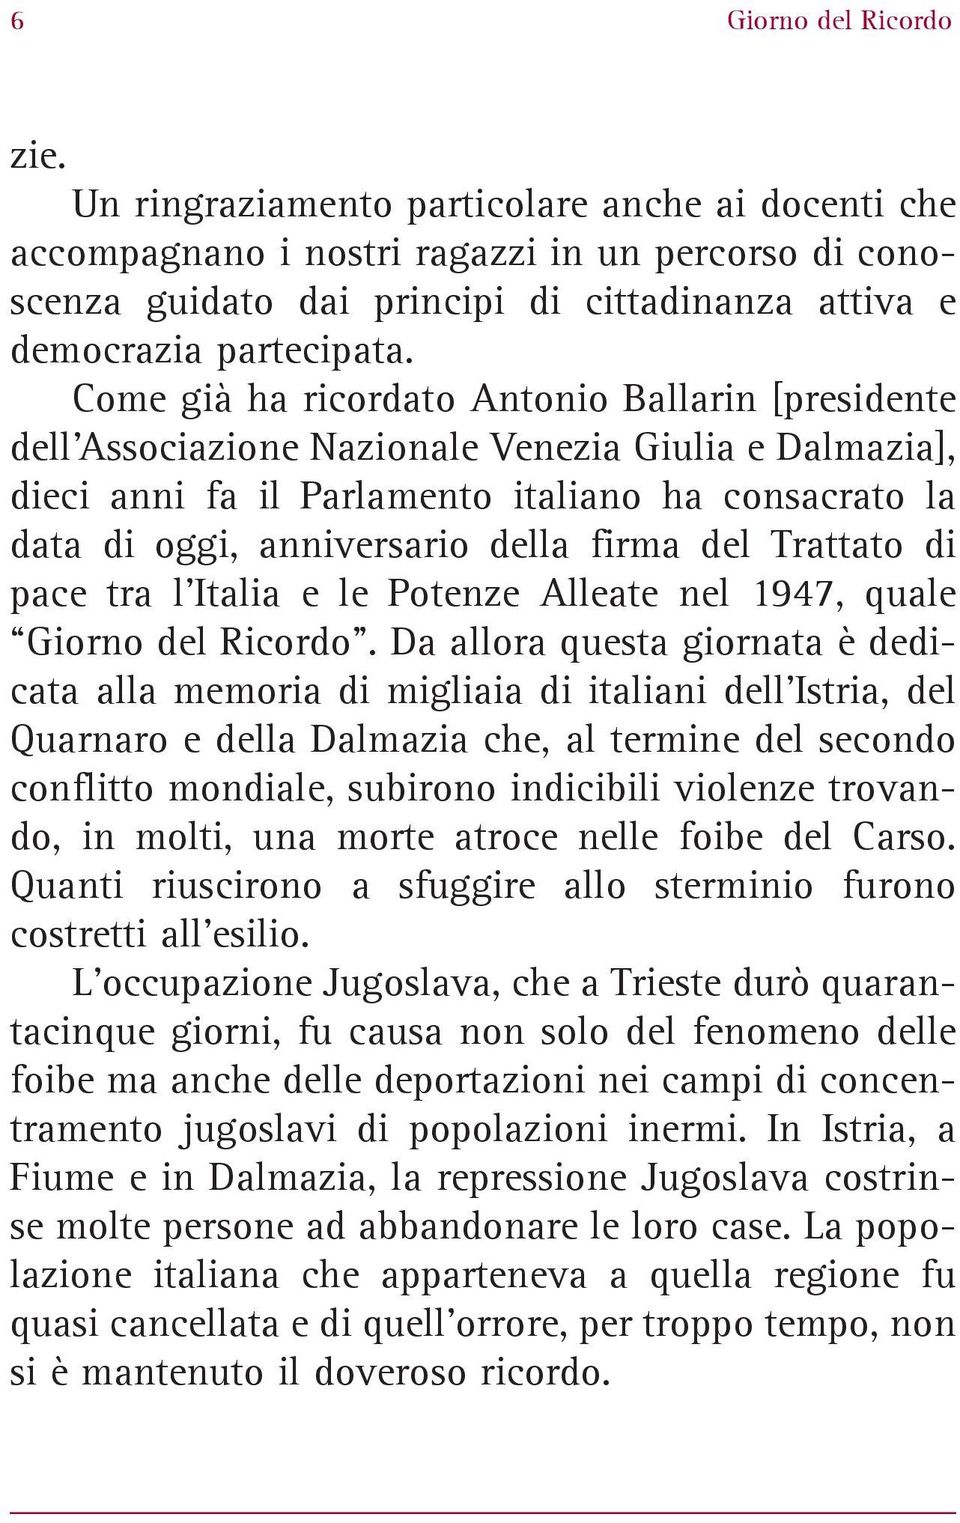 Come già ha ricordato Antonio Ballarin [presidente dell Associazione Nazionale Venezia Giulia e Dalmazia], dieci anni fa il Parlamento italiano ha consacrato la data di oggi, anniversario della firma